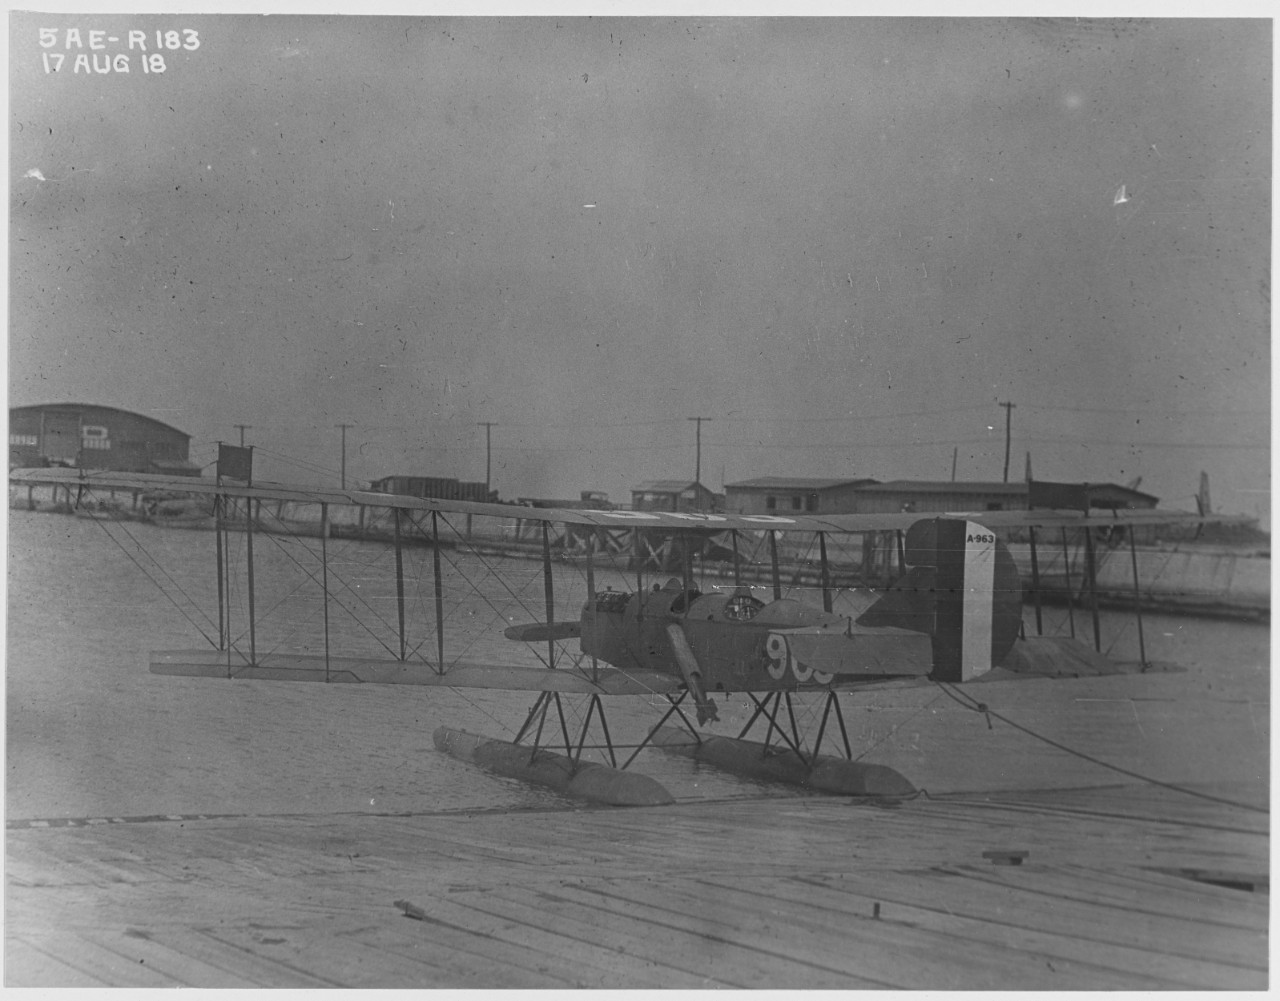 Curtiss R-6 (Buno A-963) Seaplane at Naval Air Station, Hampton Roads